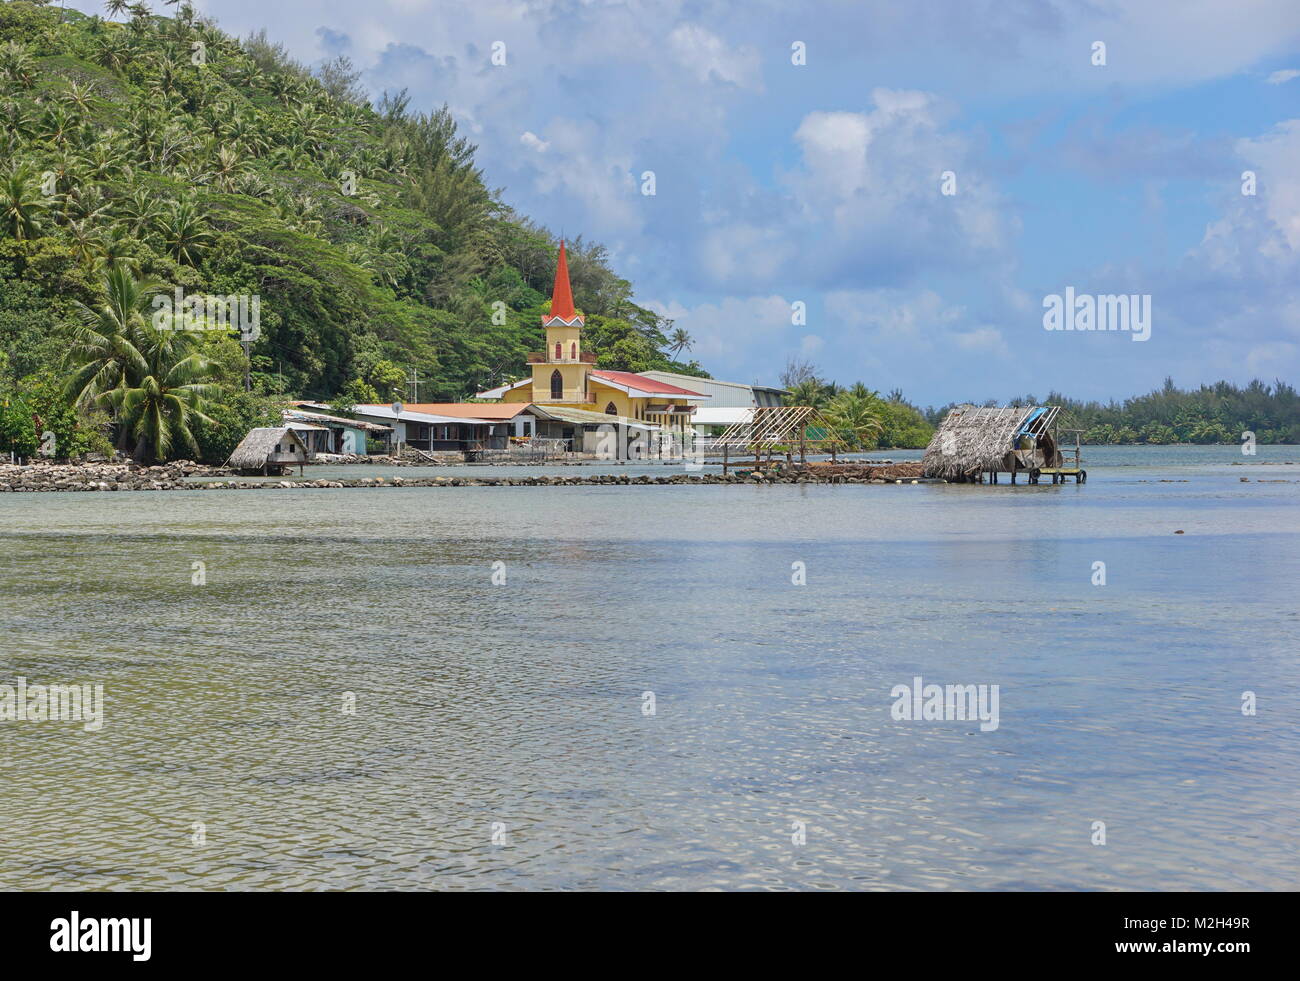 Église de l'île de Huahine et de pêche piège de Maeva village sur le bord de la faune, un lac d'nui, Polynésie Française, Pacifique sud Banque D'Images